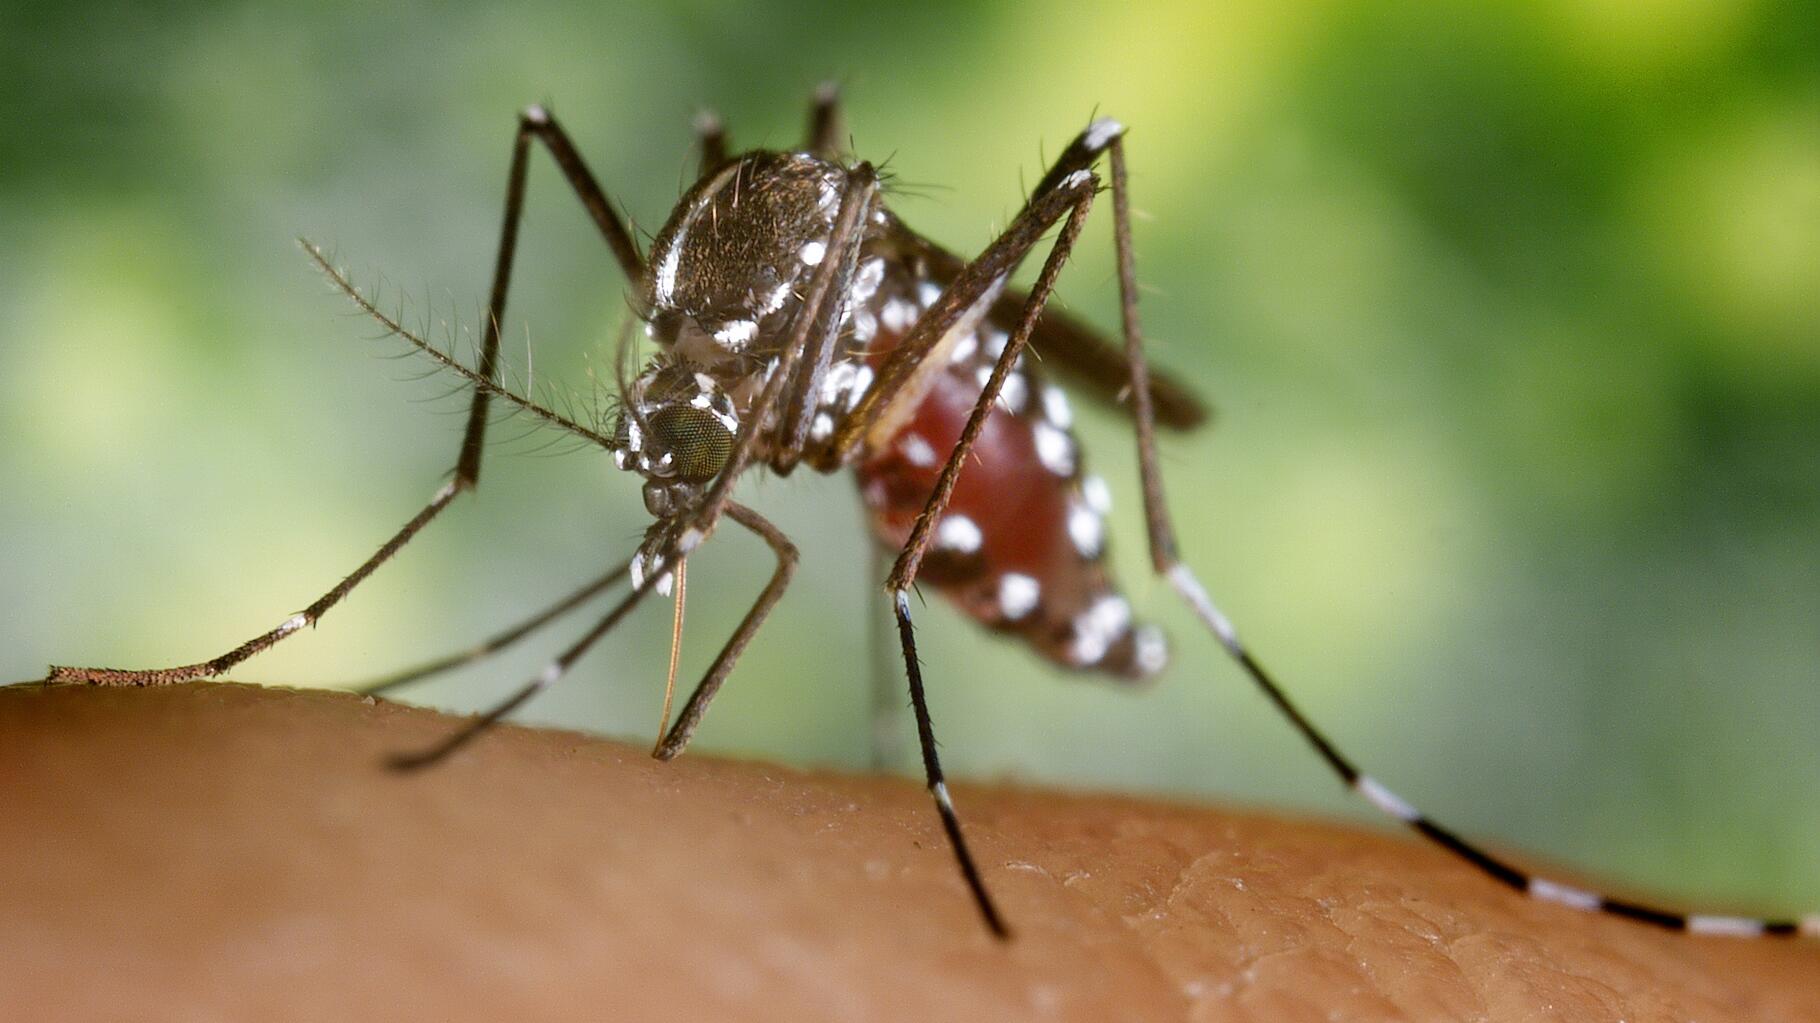 Offensive contre le moustique tigre après un cas de dengue